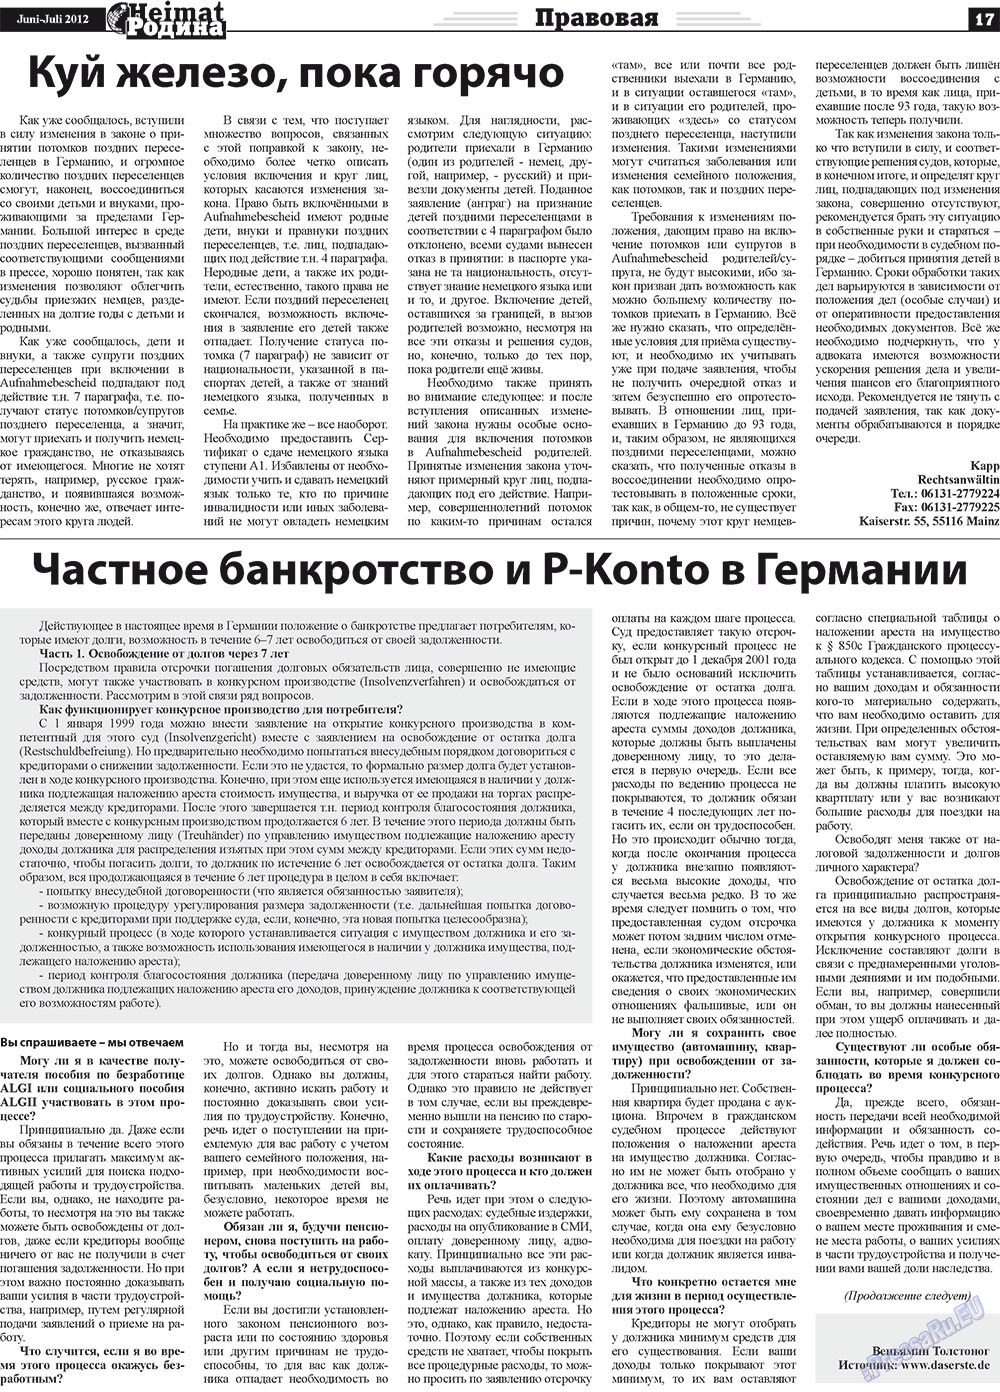 Heimat-Родина (газета). 2012 год, номер 5, стр. 17